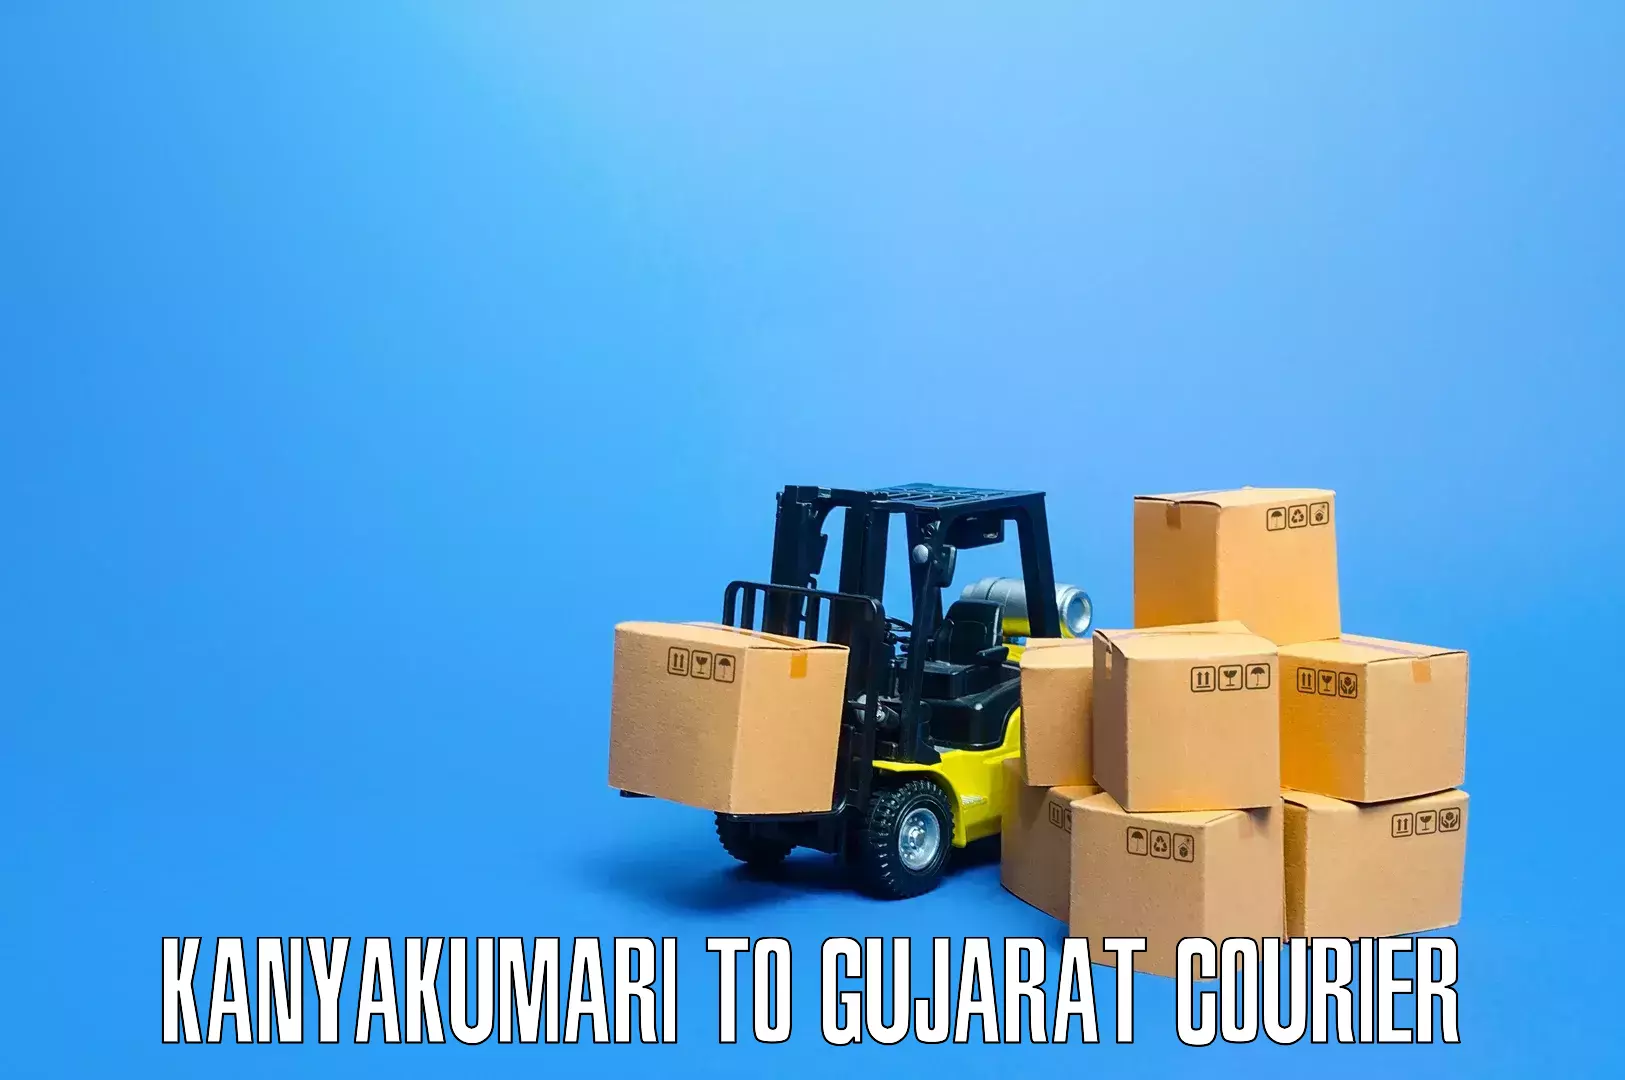 Household moving service Kanyakumari to IIIT Surat